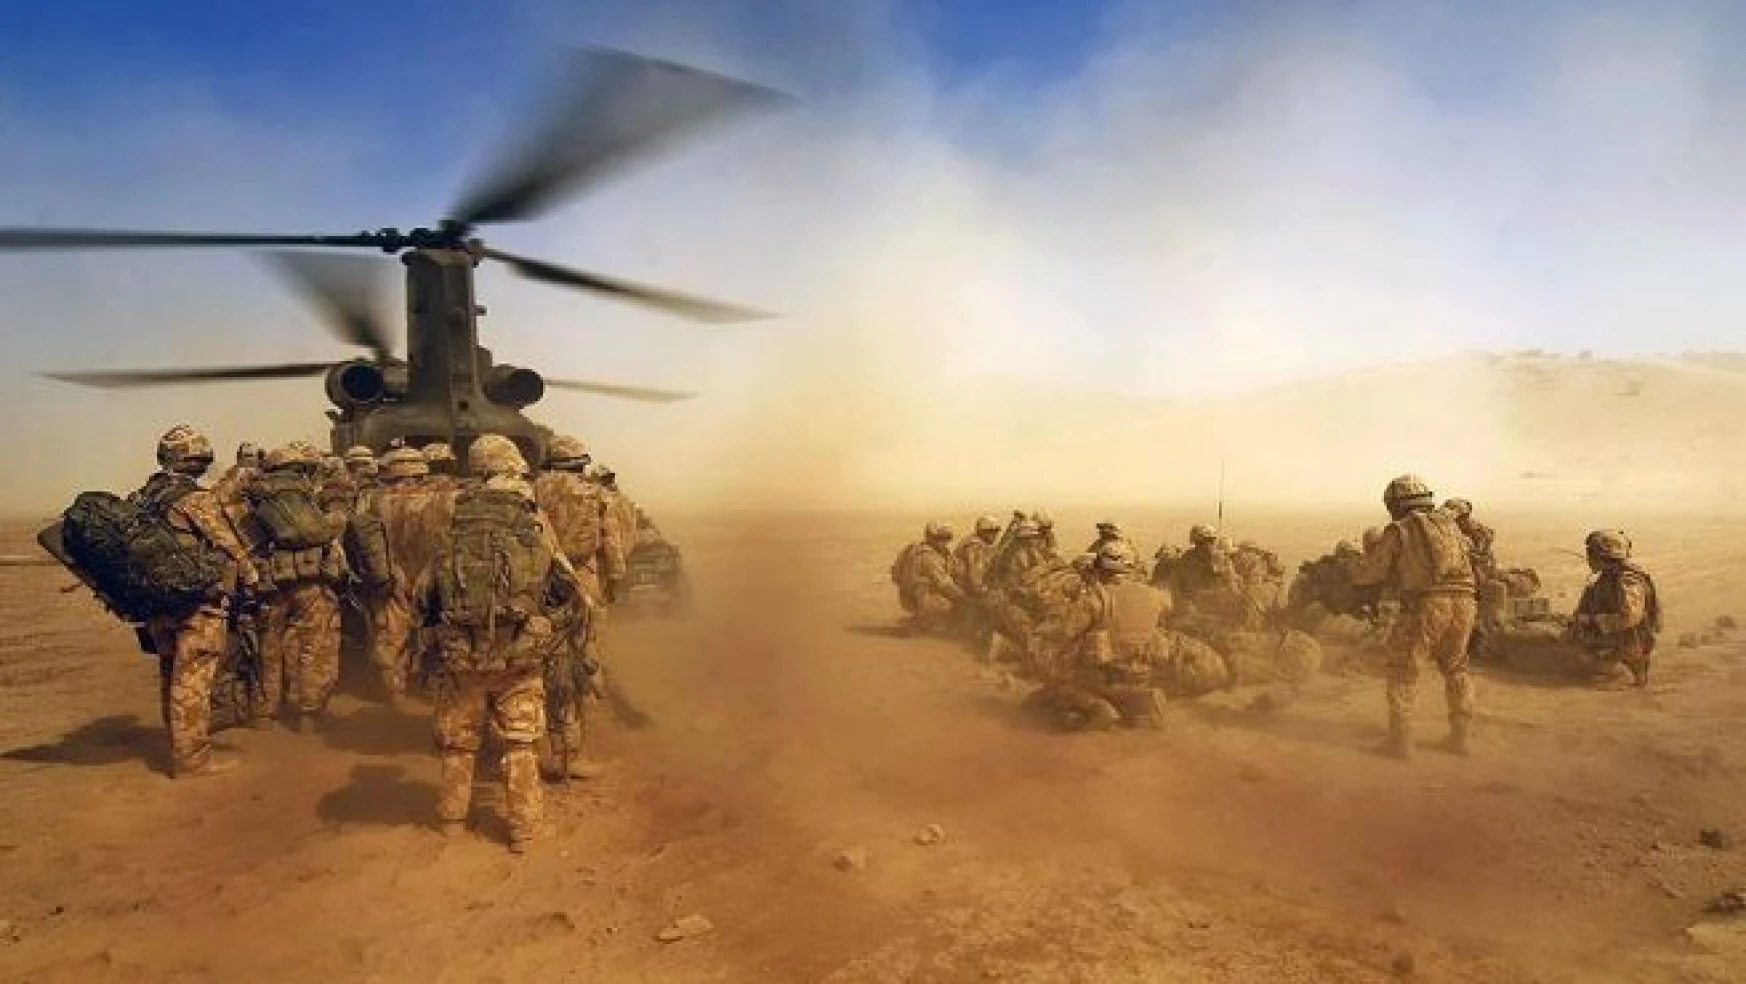 "İngiliz askerleri Irak'ta savaş suçu işlemiş olabilir"